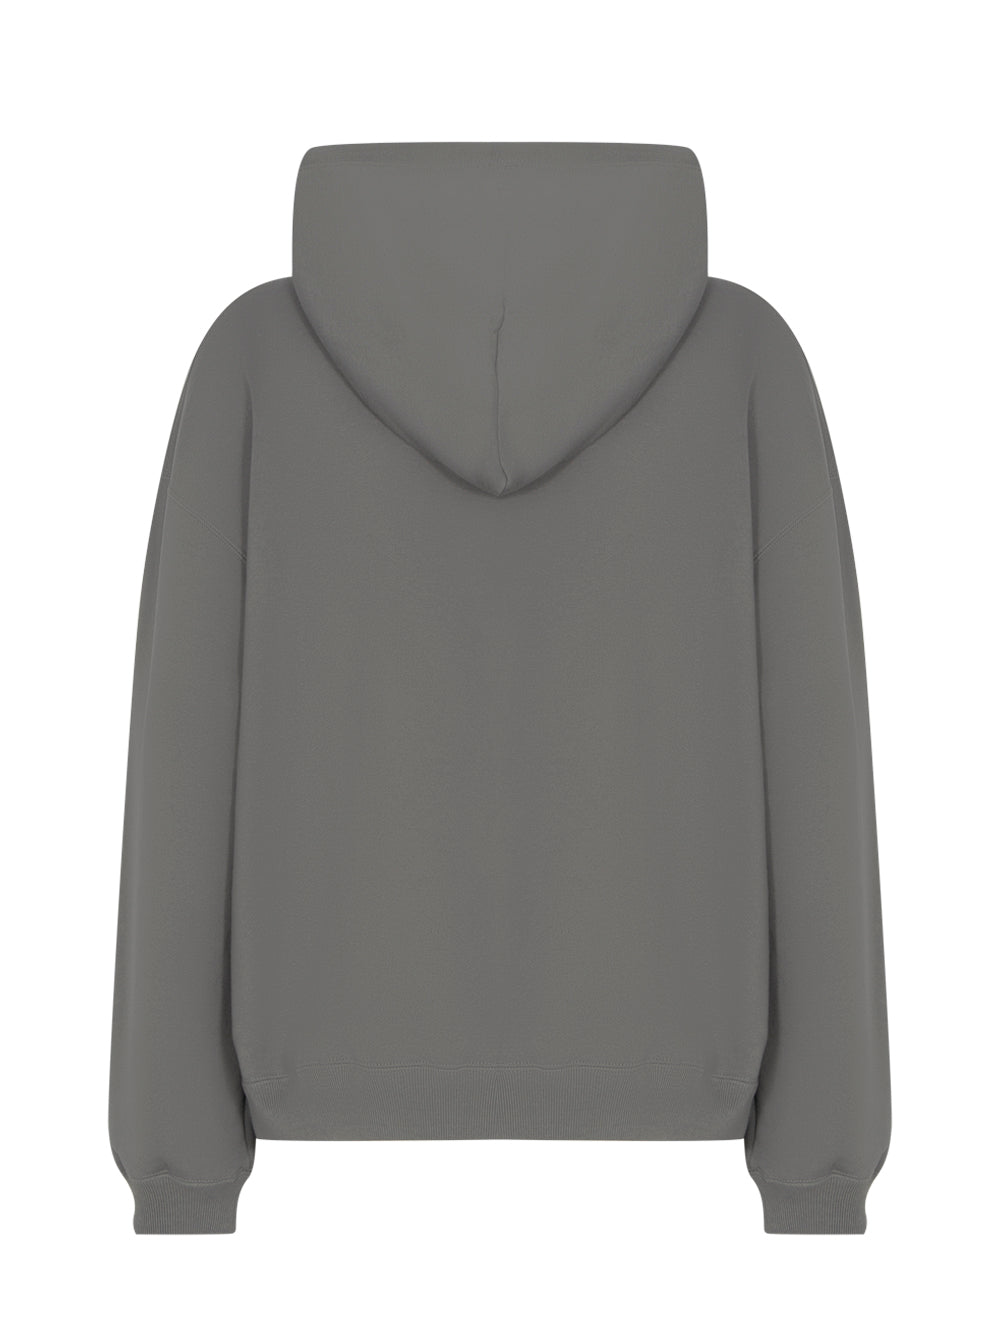 Yohji Yamamoto X NEIGHBORHOOD PT Hoodie Sweater (Grey)